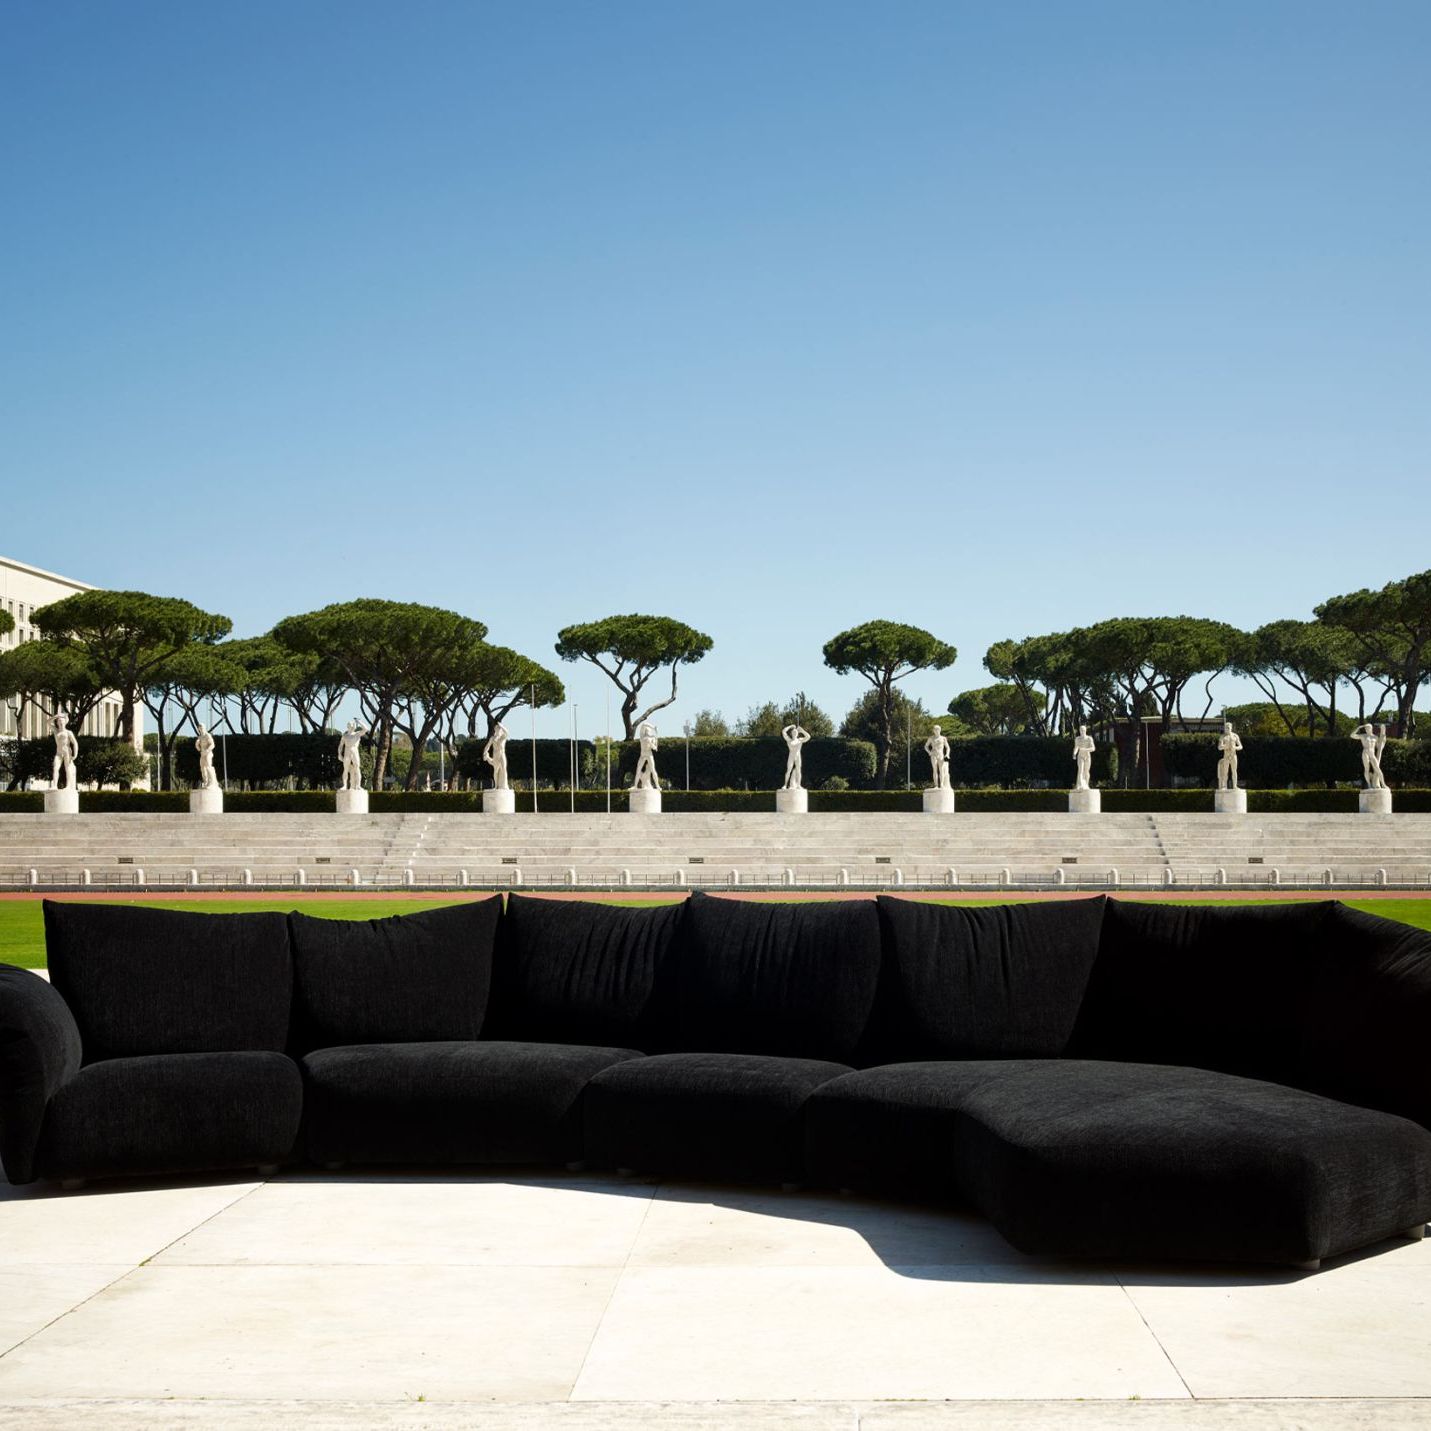   Standard . Il divano di Francesco Binfaré nell’allestimento speciale dello Stadio dei Marmi a Roma. Sullo sfondo le 60 statue marmoree che rappresentano le discipline sportive. 